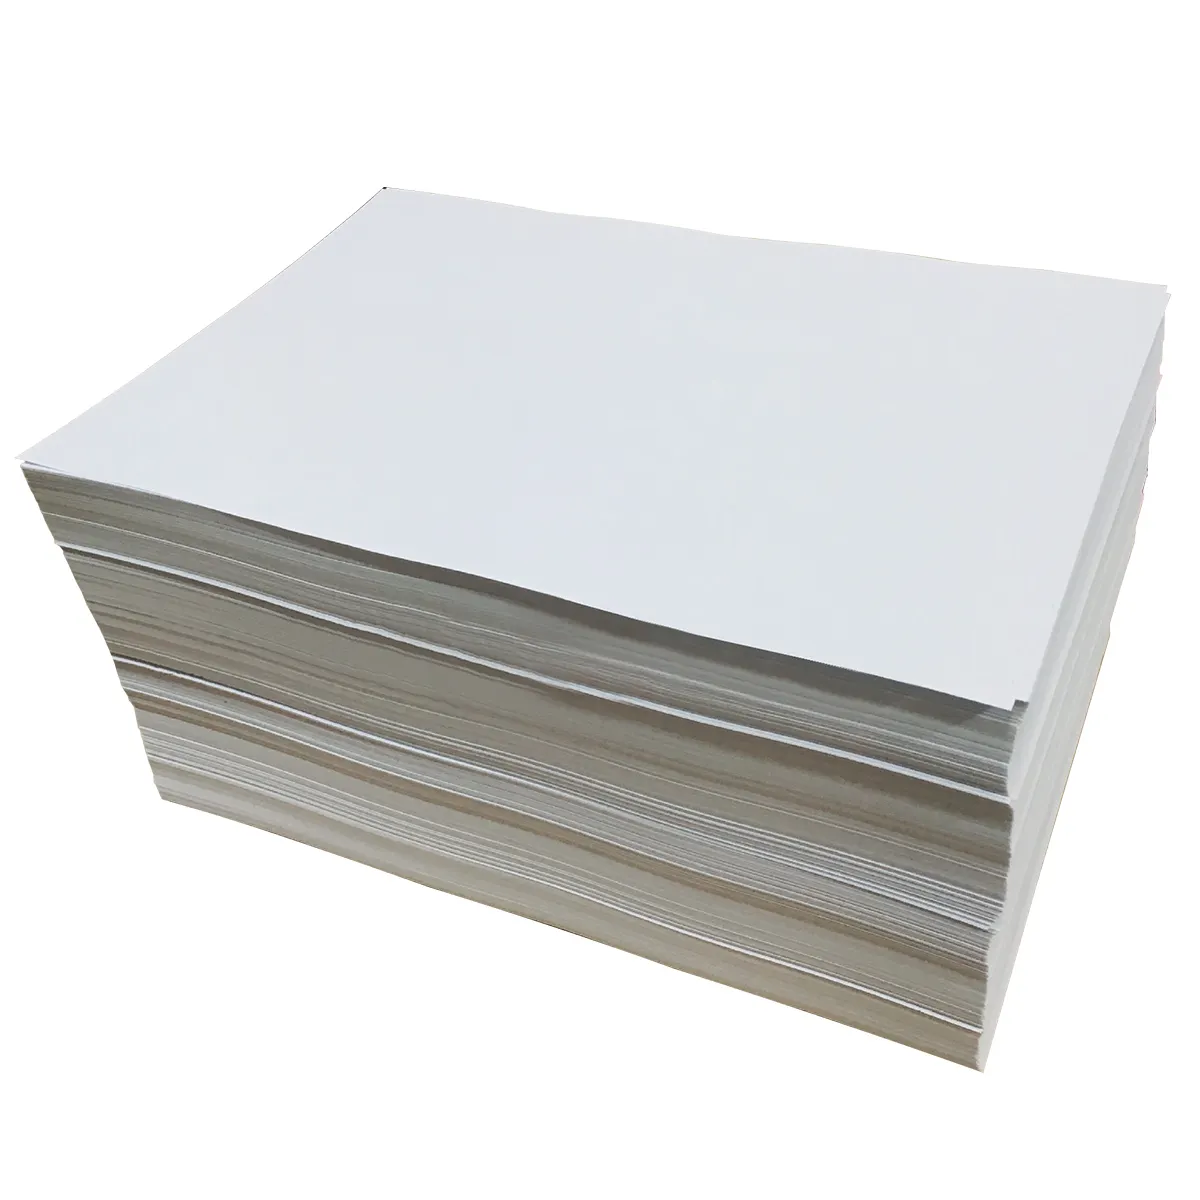 Fabrika fiyat kağıt levha beyaz yapışkanlı kağıt silikon kaplı yapışkanlı kağıt